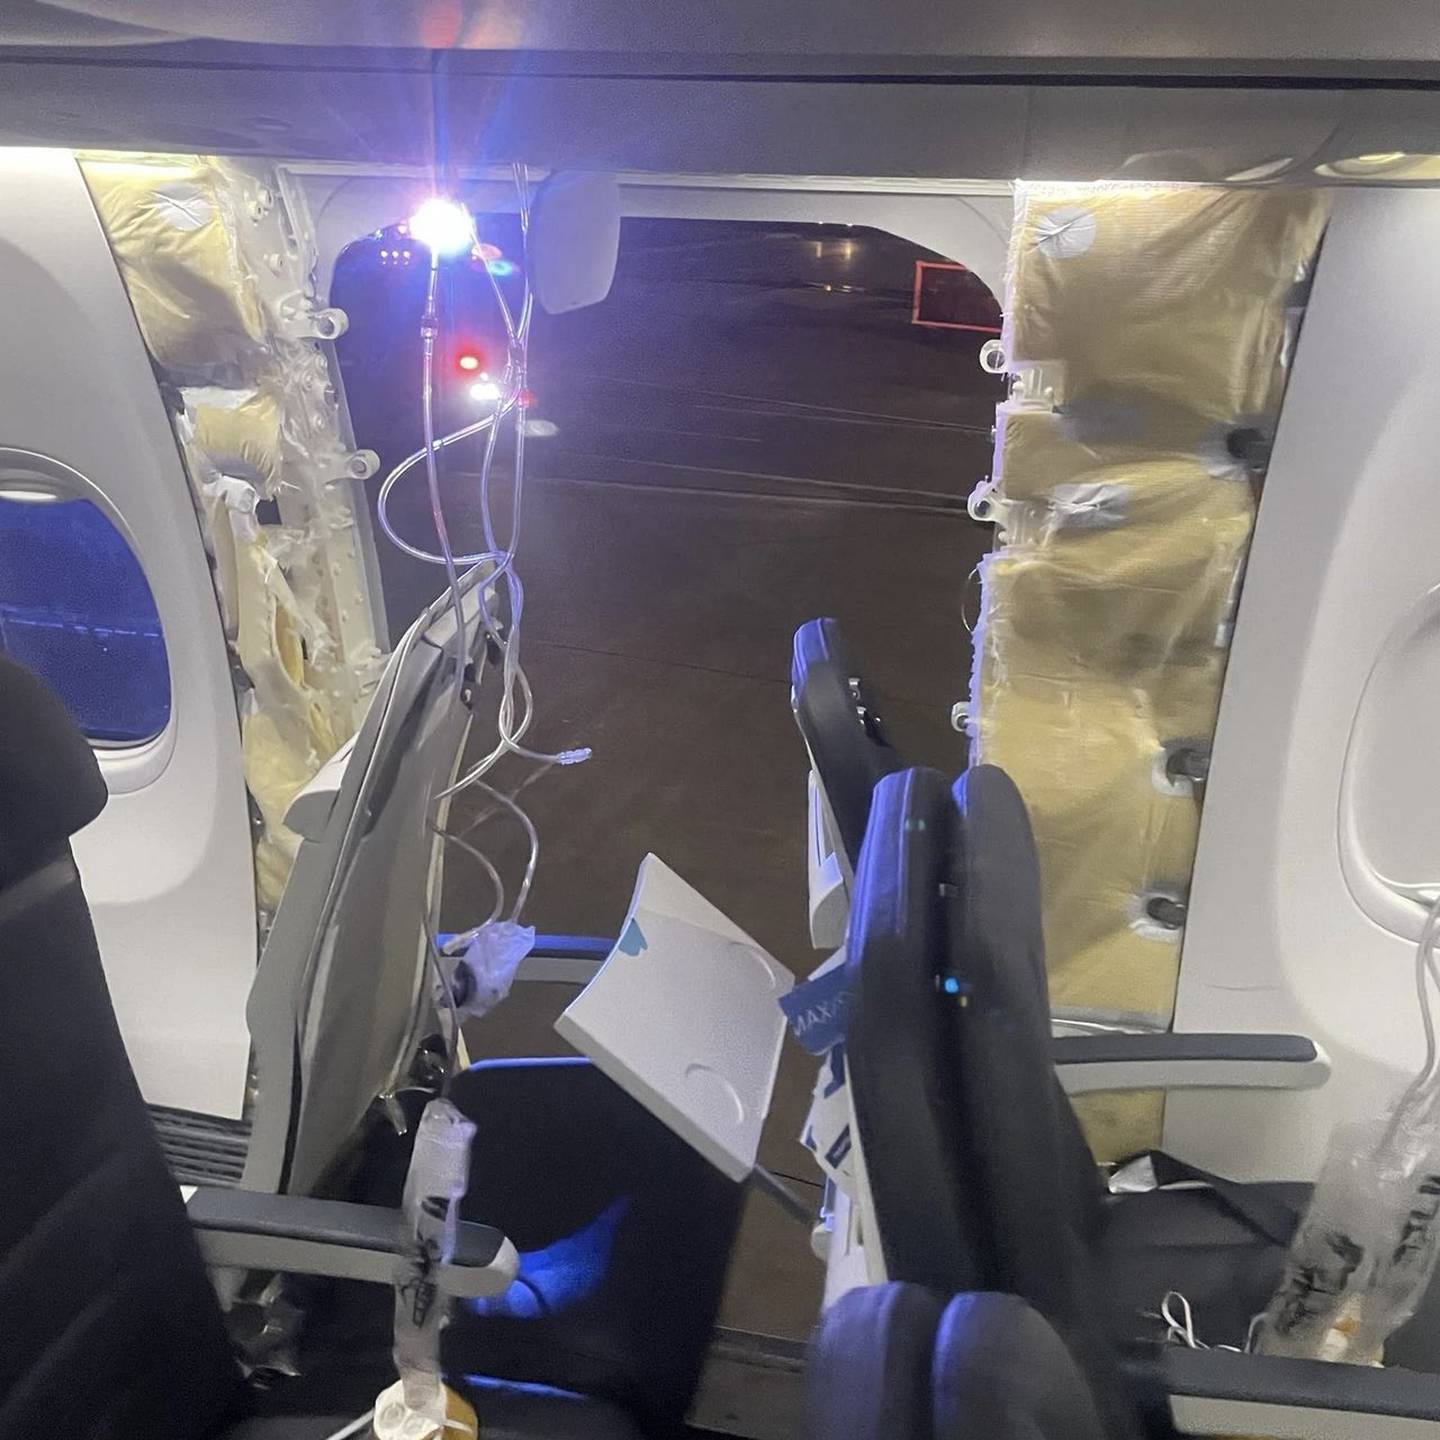 Una fotografía proporcionada por un pasajero evidenció cómo voló sin puerta de emergencia el Boeing 737-9 Max de Alaska Airlines. La imagen se capturó después de que aeronave aterrizó de forma segura en Portland. Fotografía: Elizabeth Le